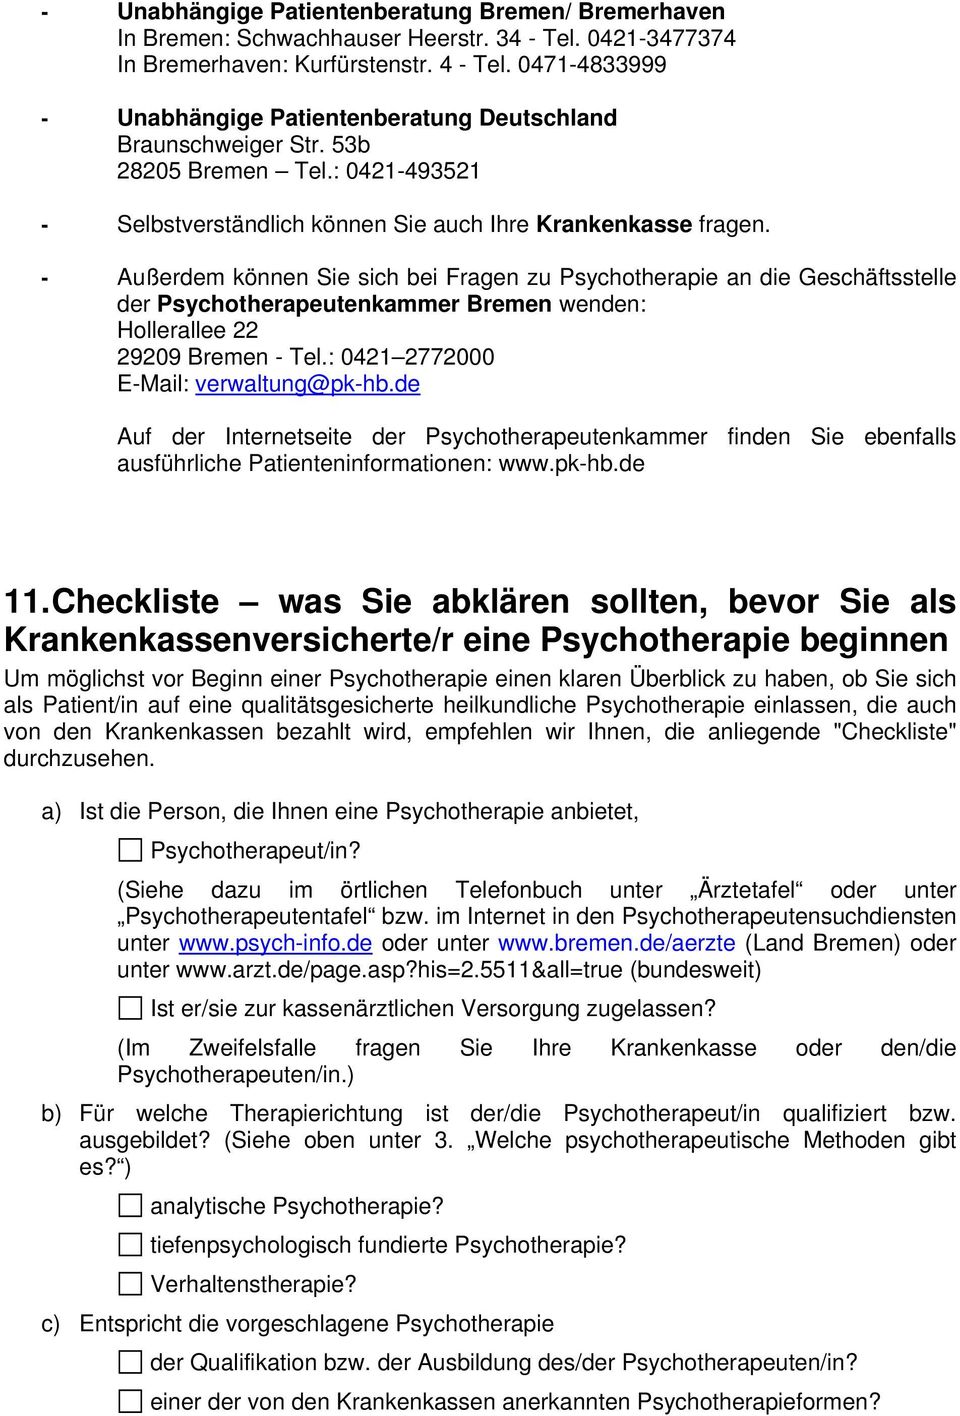 - Außerdem können Sie sich bei Fragen zu Psychotherapie an die Geschäftsstelle der Psychotherapeutenkammer Bremen wenden: Hollerallee 22 29209 Bremen - Tel.: 0421 2772000 E-Mail: verwaltung@pk-hb.